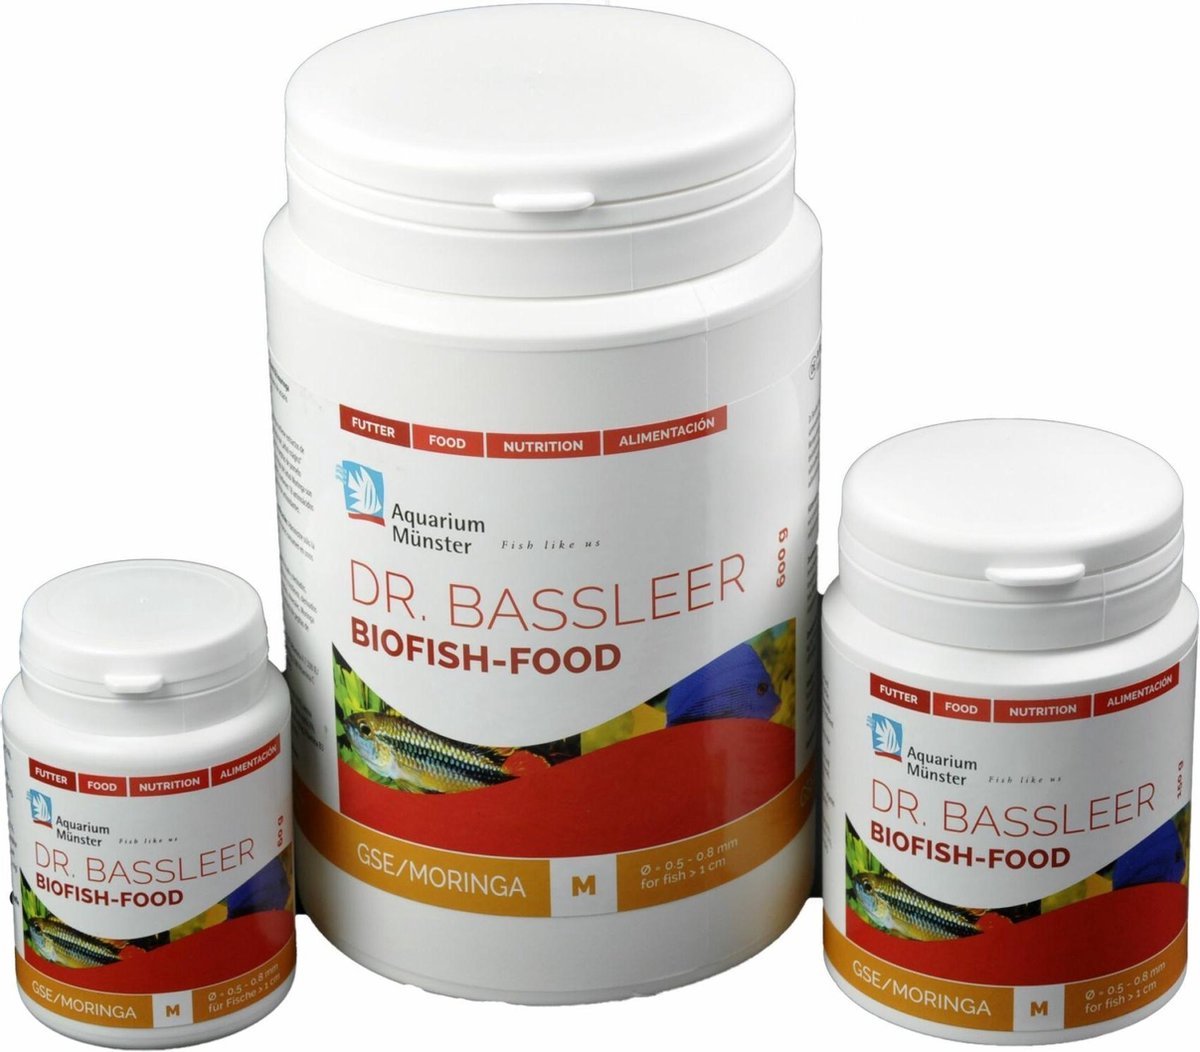 GSE/Moringa – Dr. Bassleer BioFish Food L 600gr